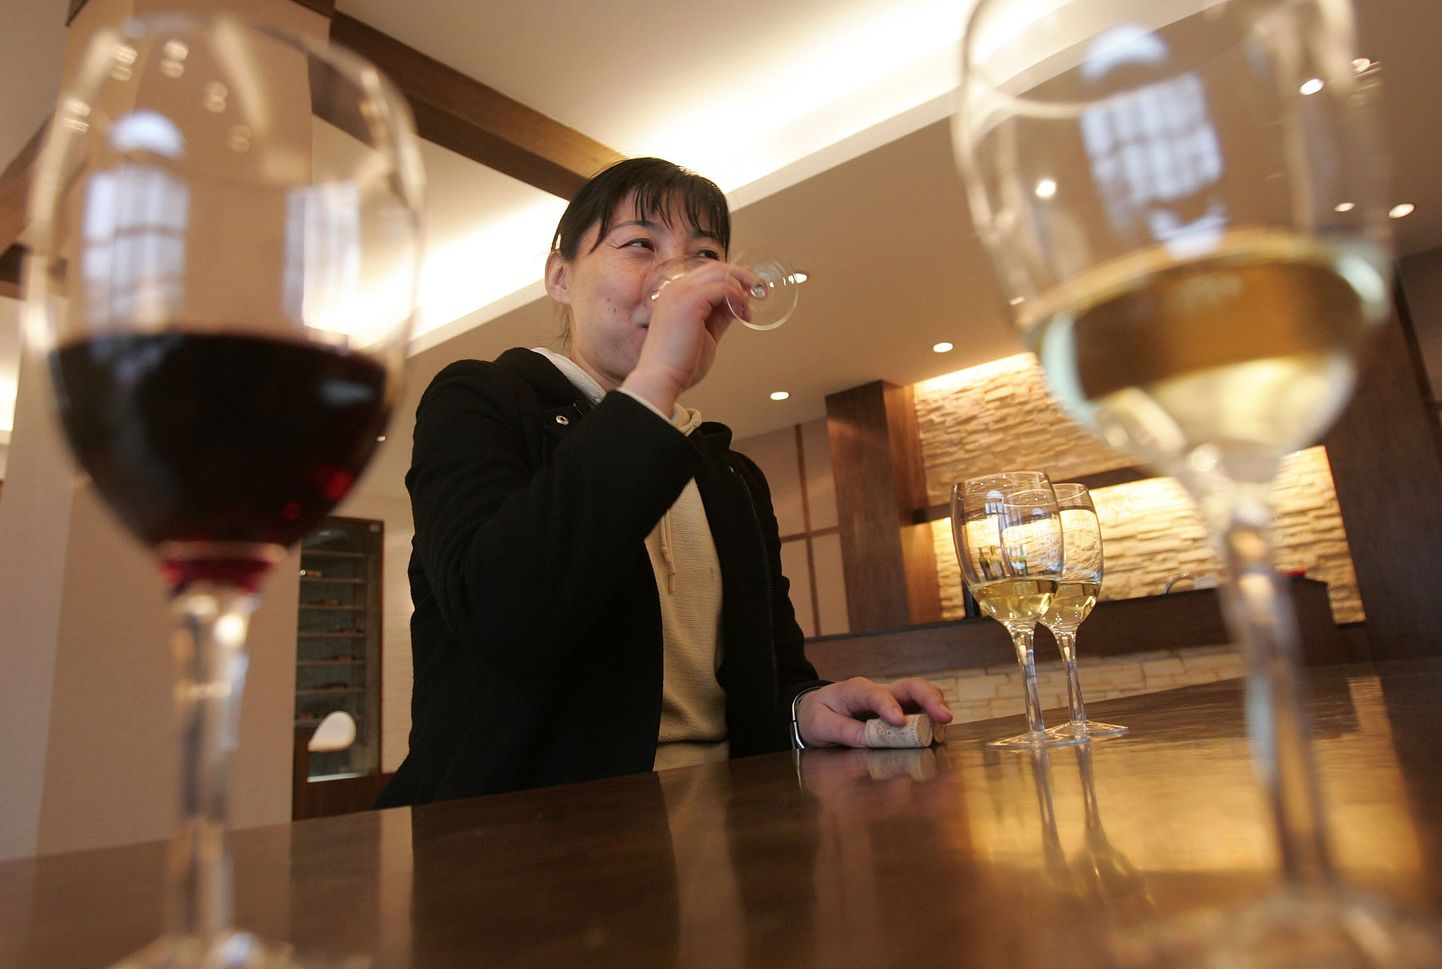 Prantsuse haigla avas surmahaigetele patsientidele veinibaari